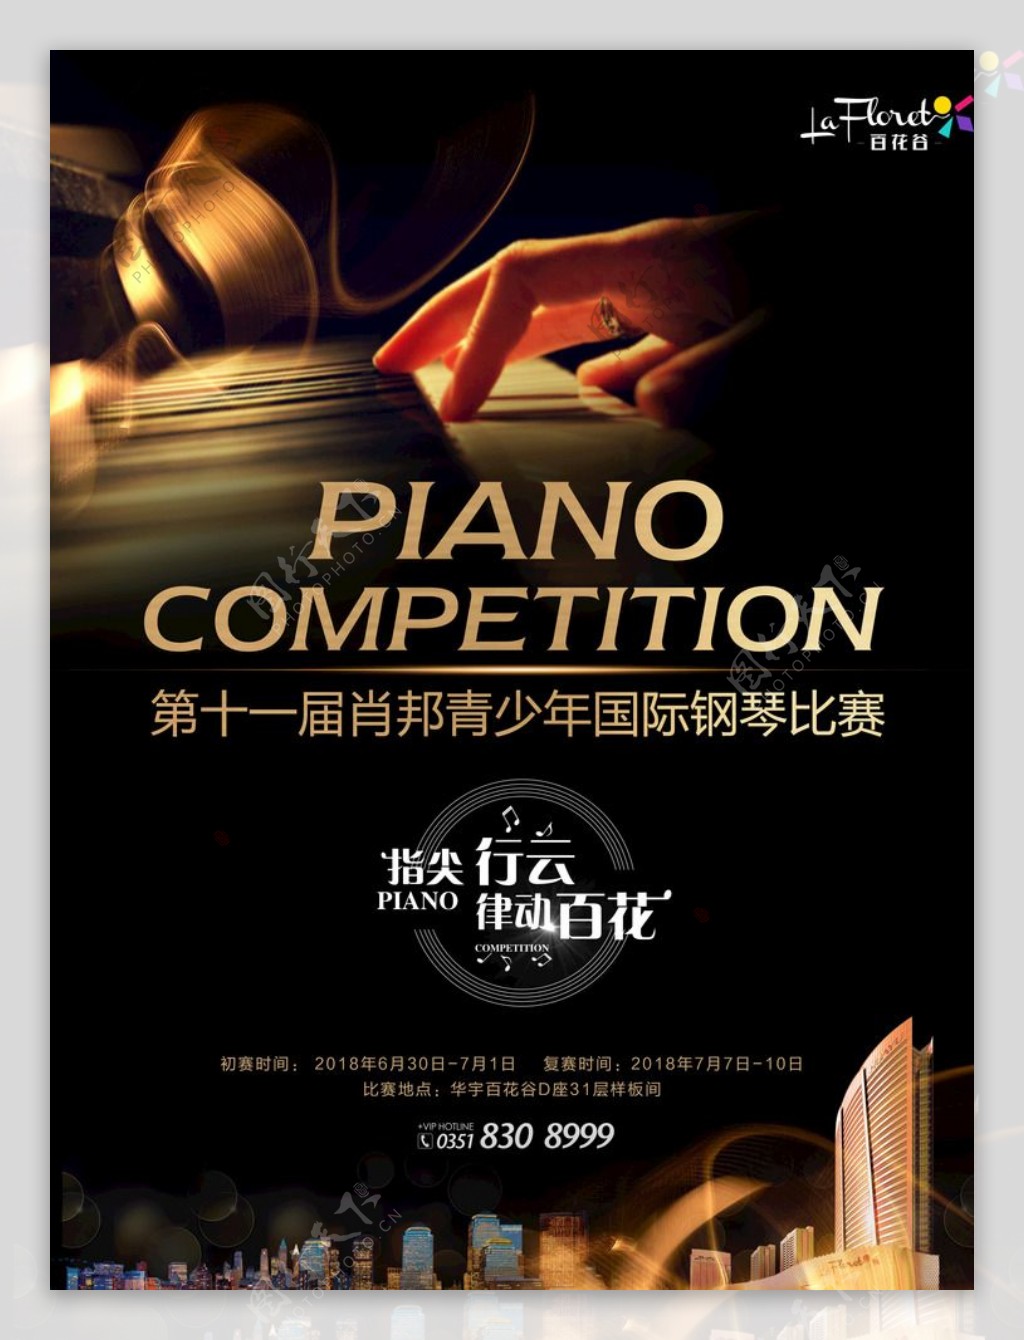 钢琴钢琴海报钢琴培训音乐会海报